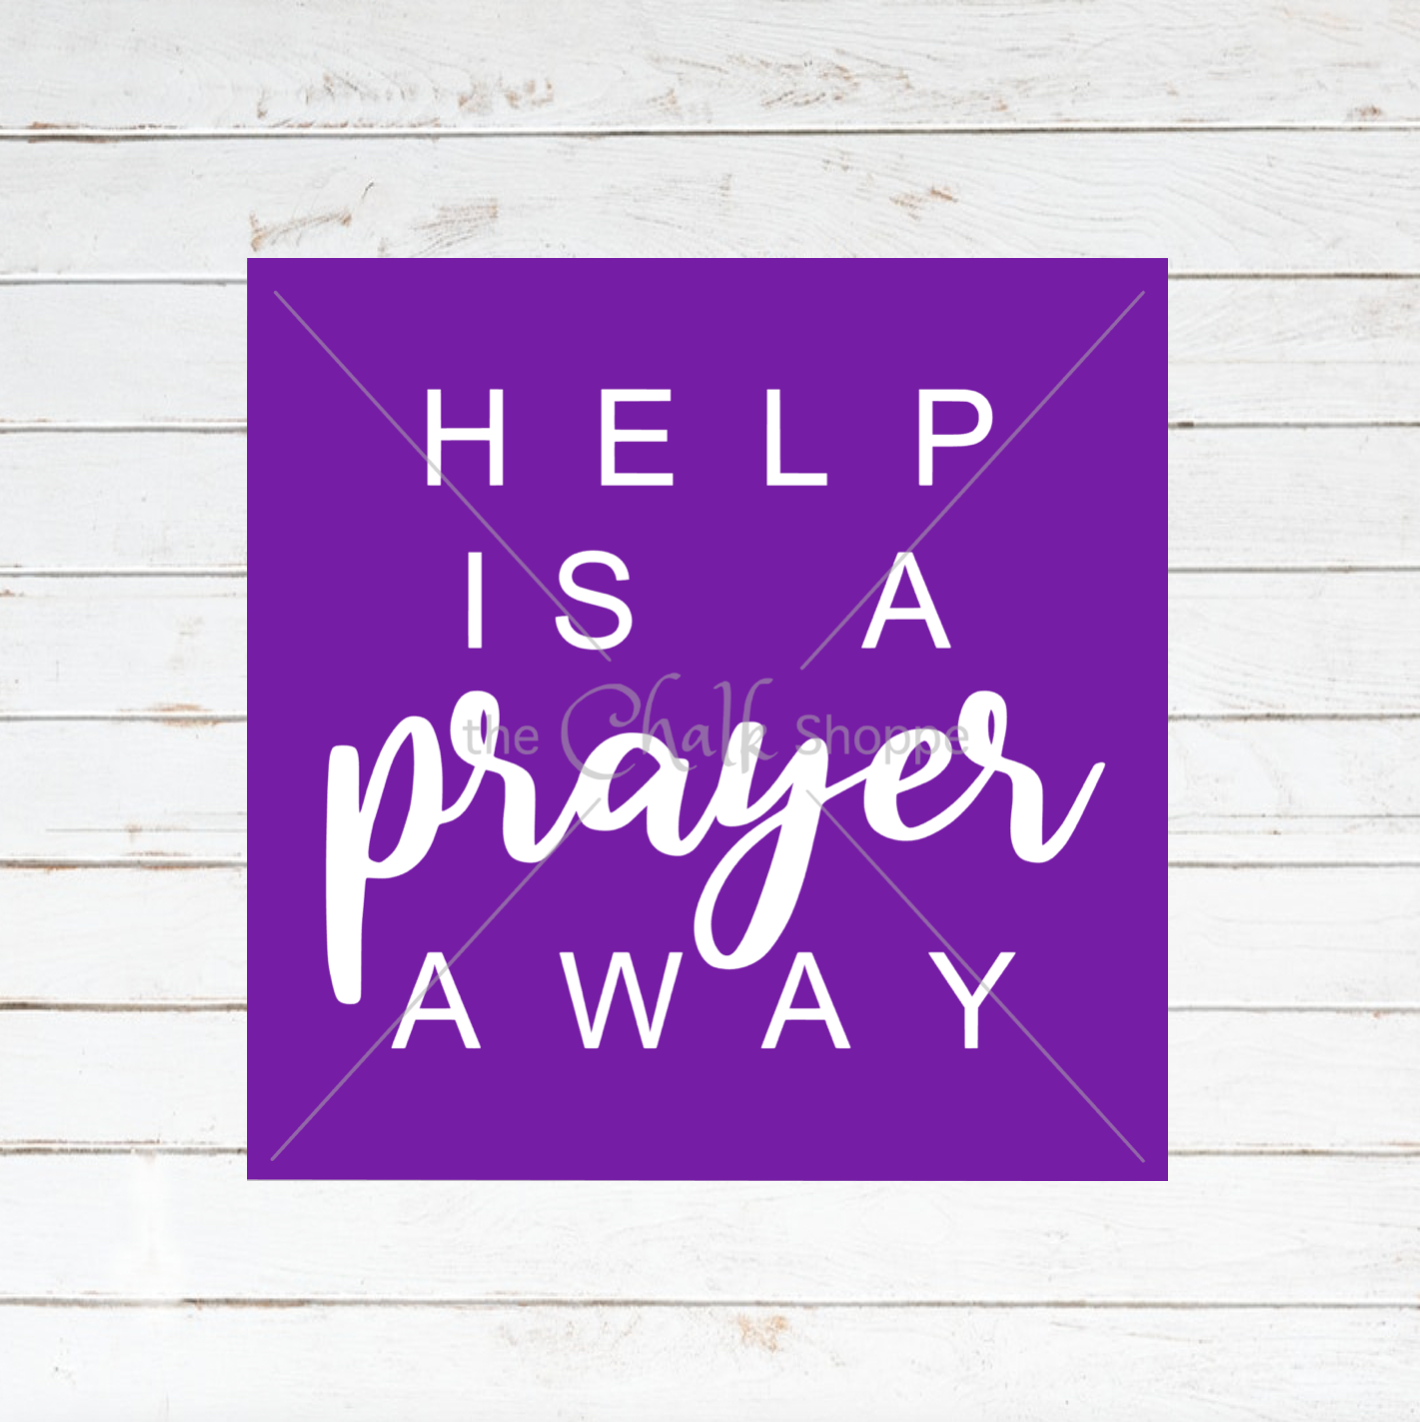 Help Is A Prayer Away